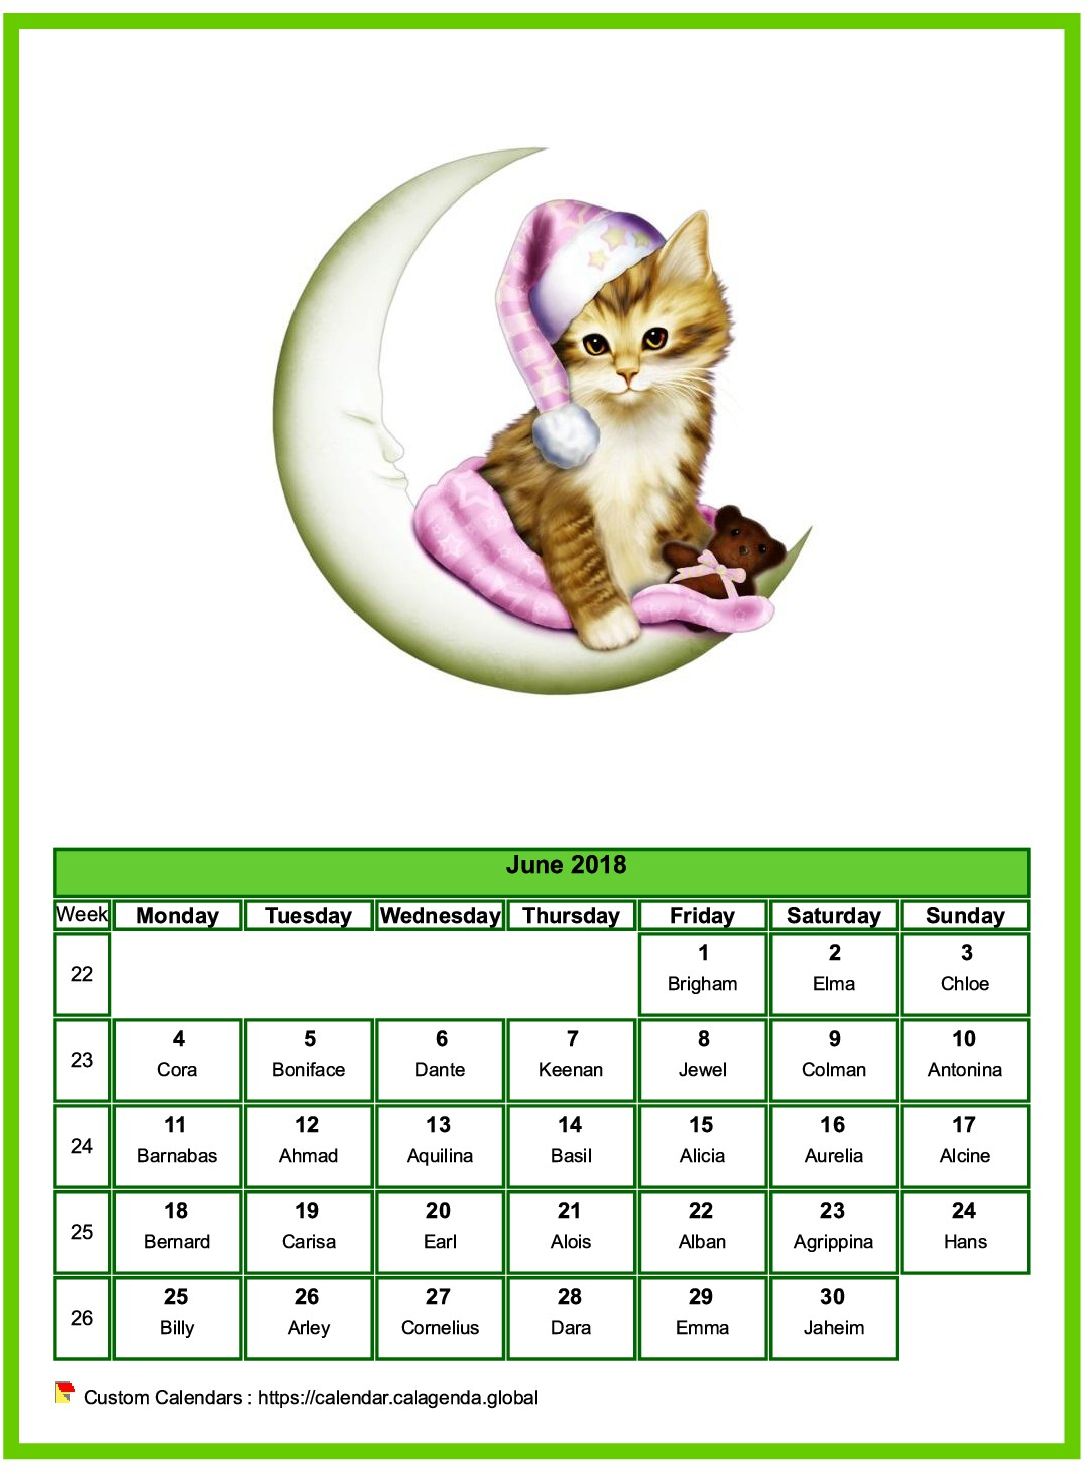 Calendar June 2018 cats